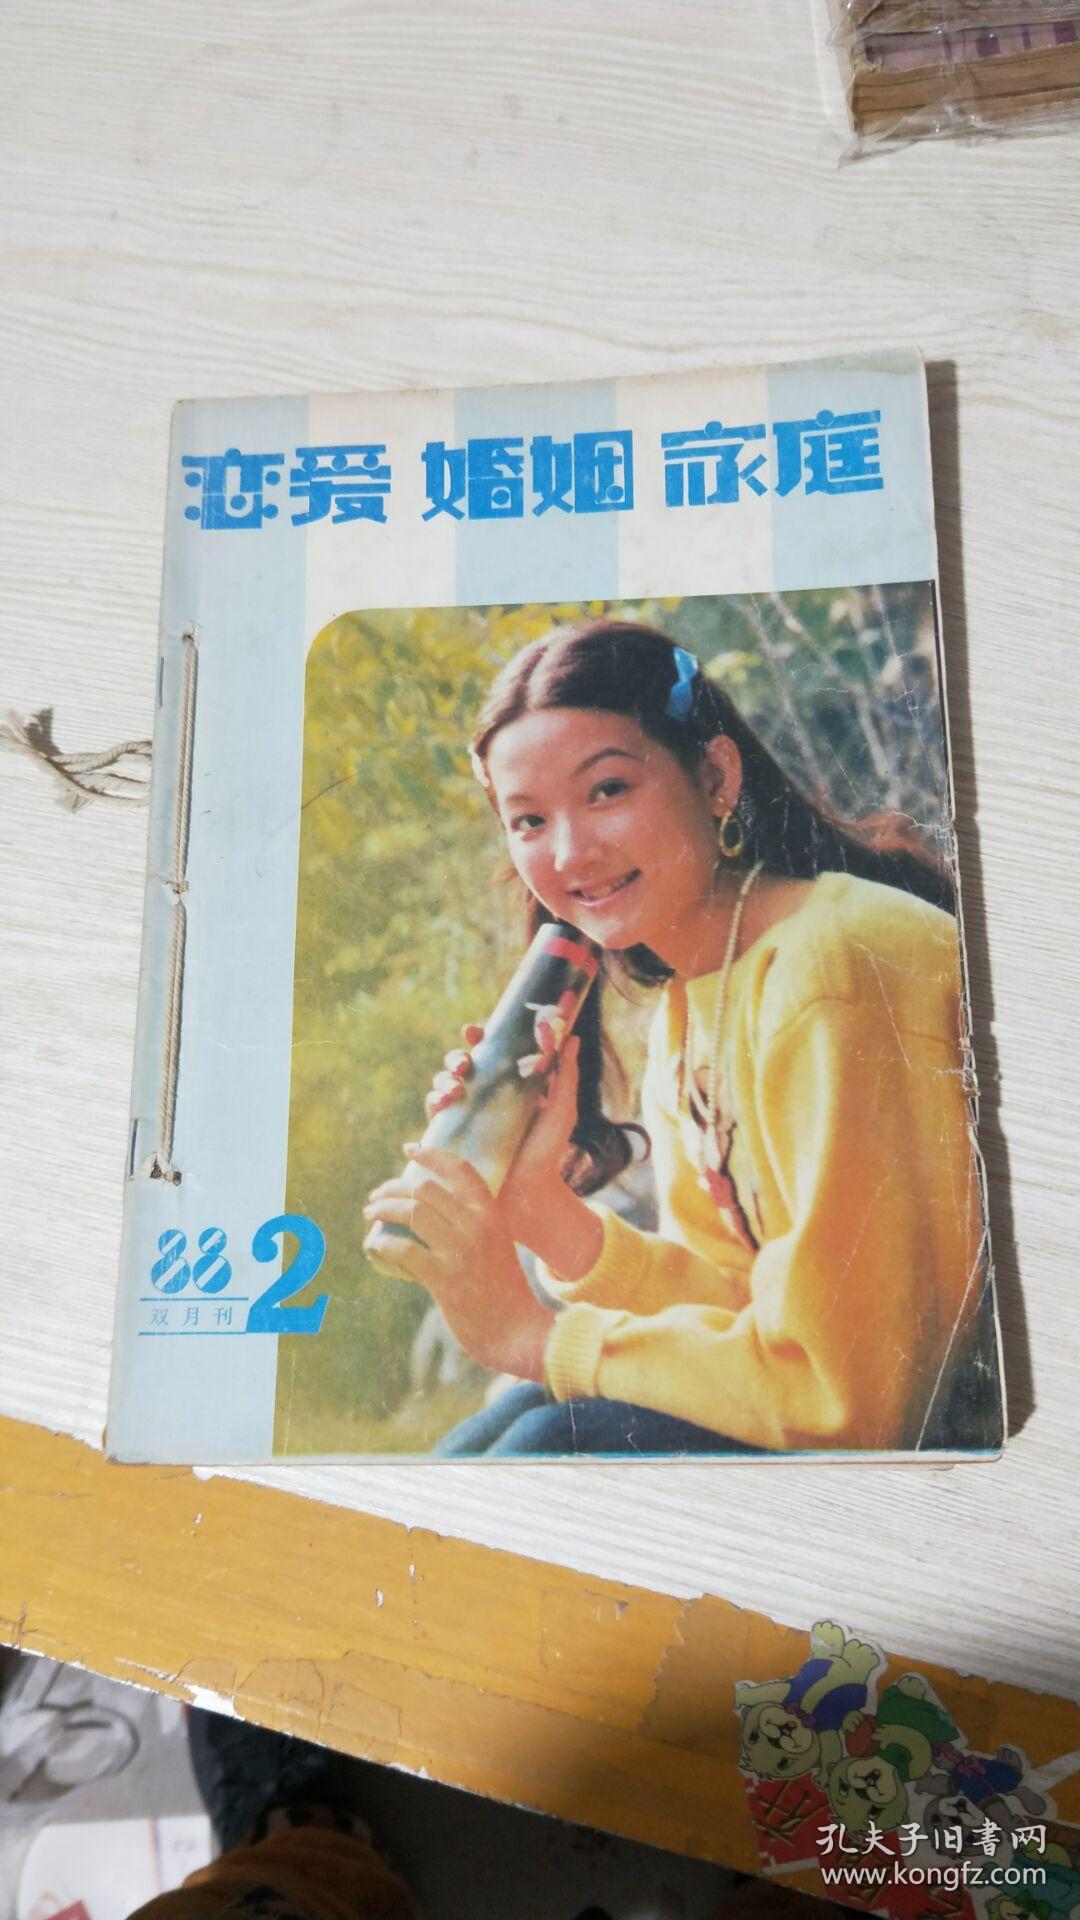 恋爱 婚姻 家庭1988年双月刊（2-6期）5本合售【合订本】